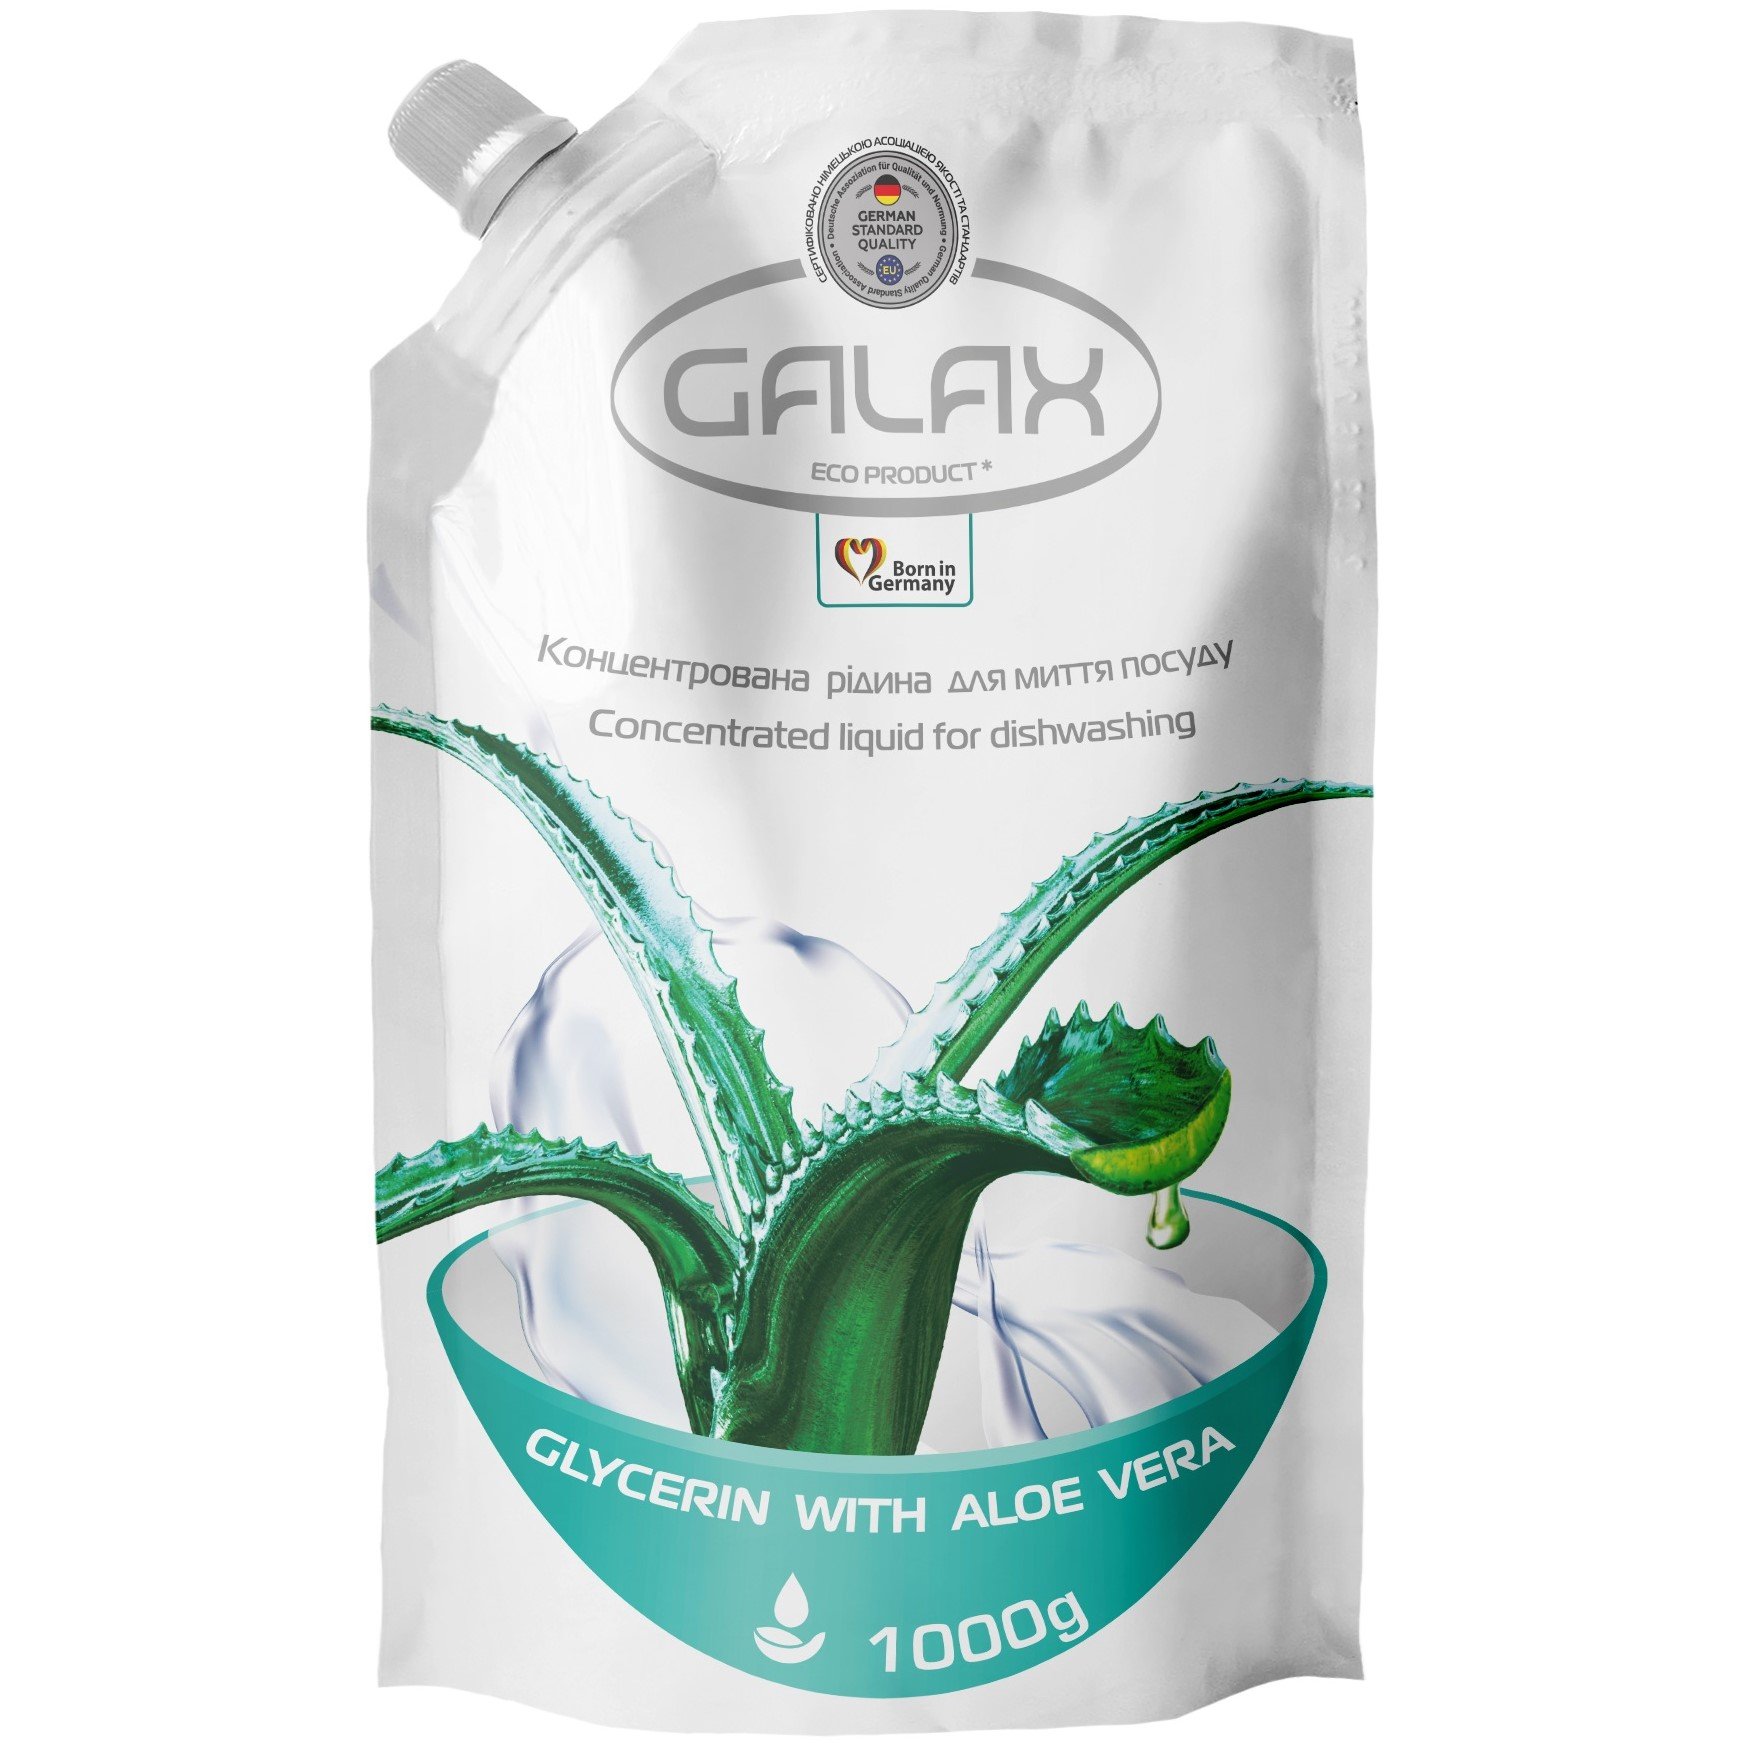 Концентрована рідина для миття посуду Galax Glycerin With Aloe Vera 1000 г - фото 1